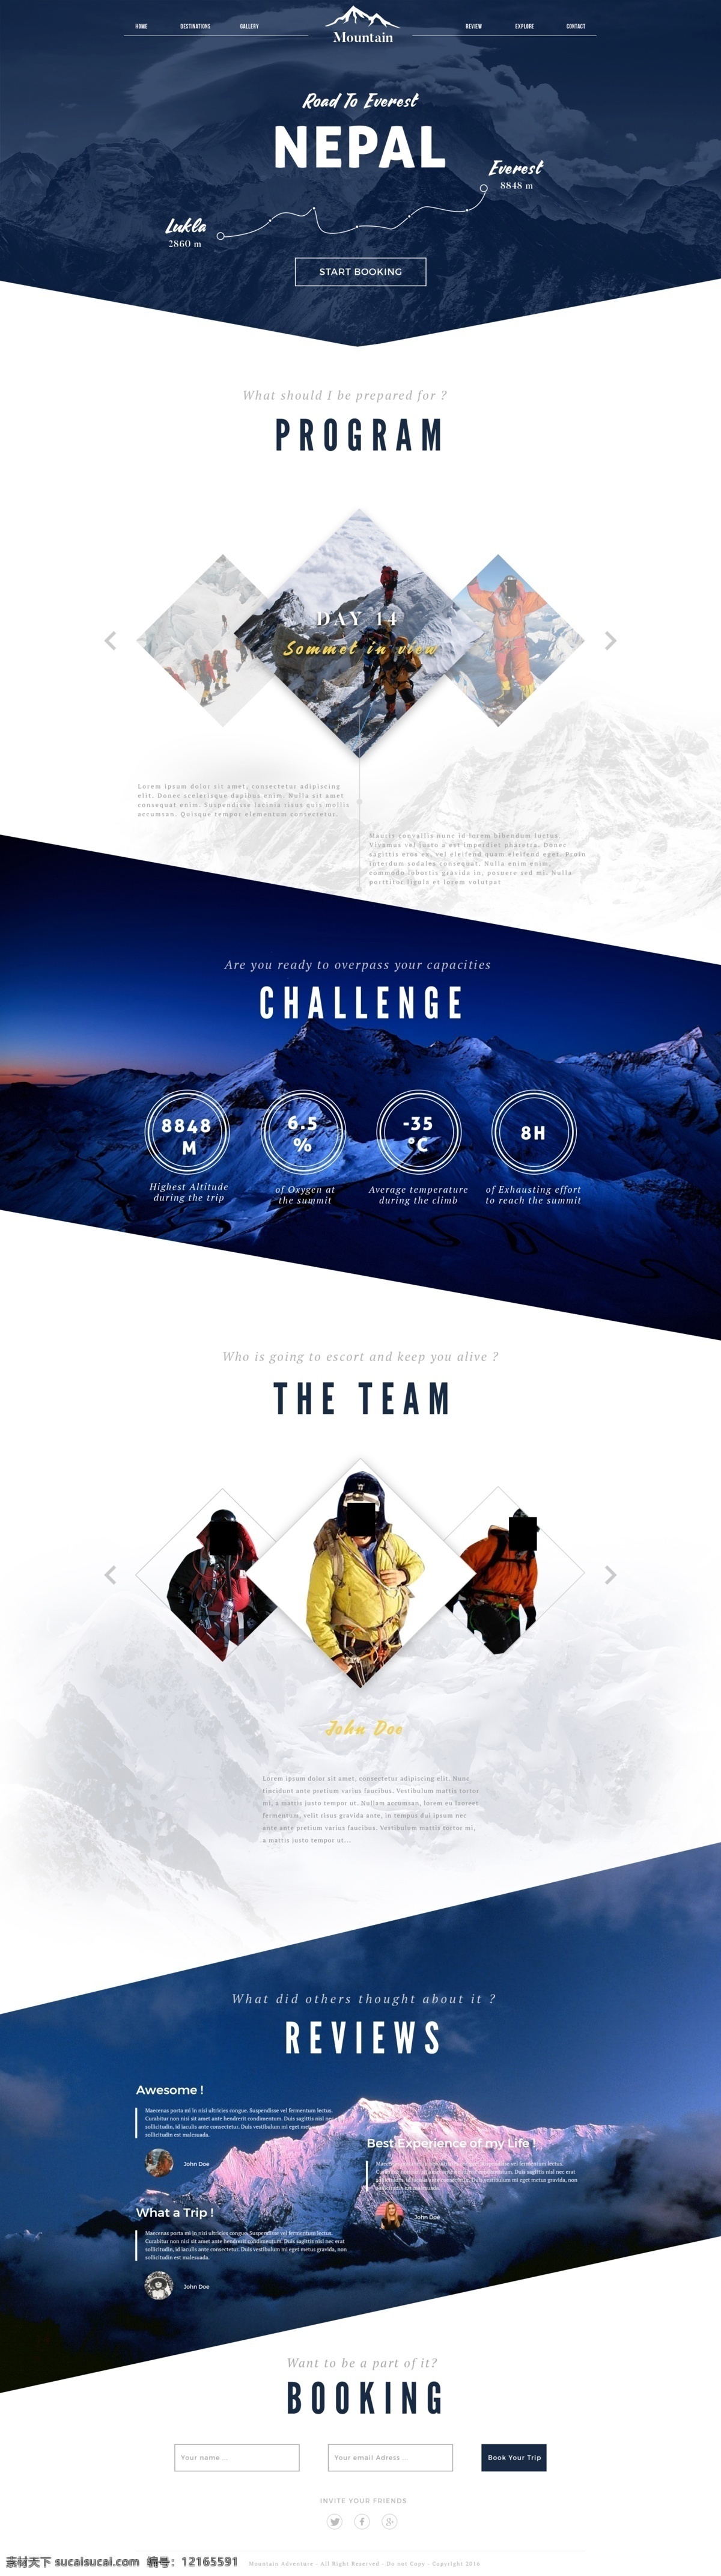 户外运动 旅游 网页设计 雪山 促销 活动 攀岩 爬山 蓝色 几何 网页